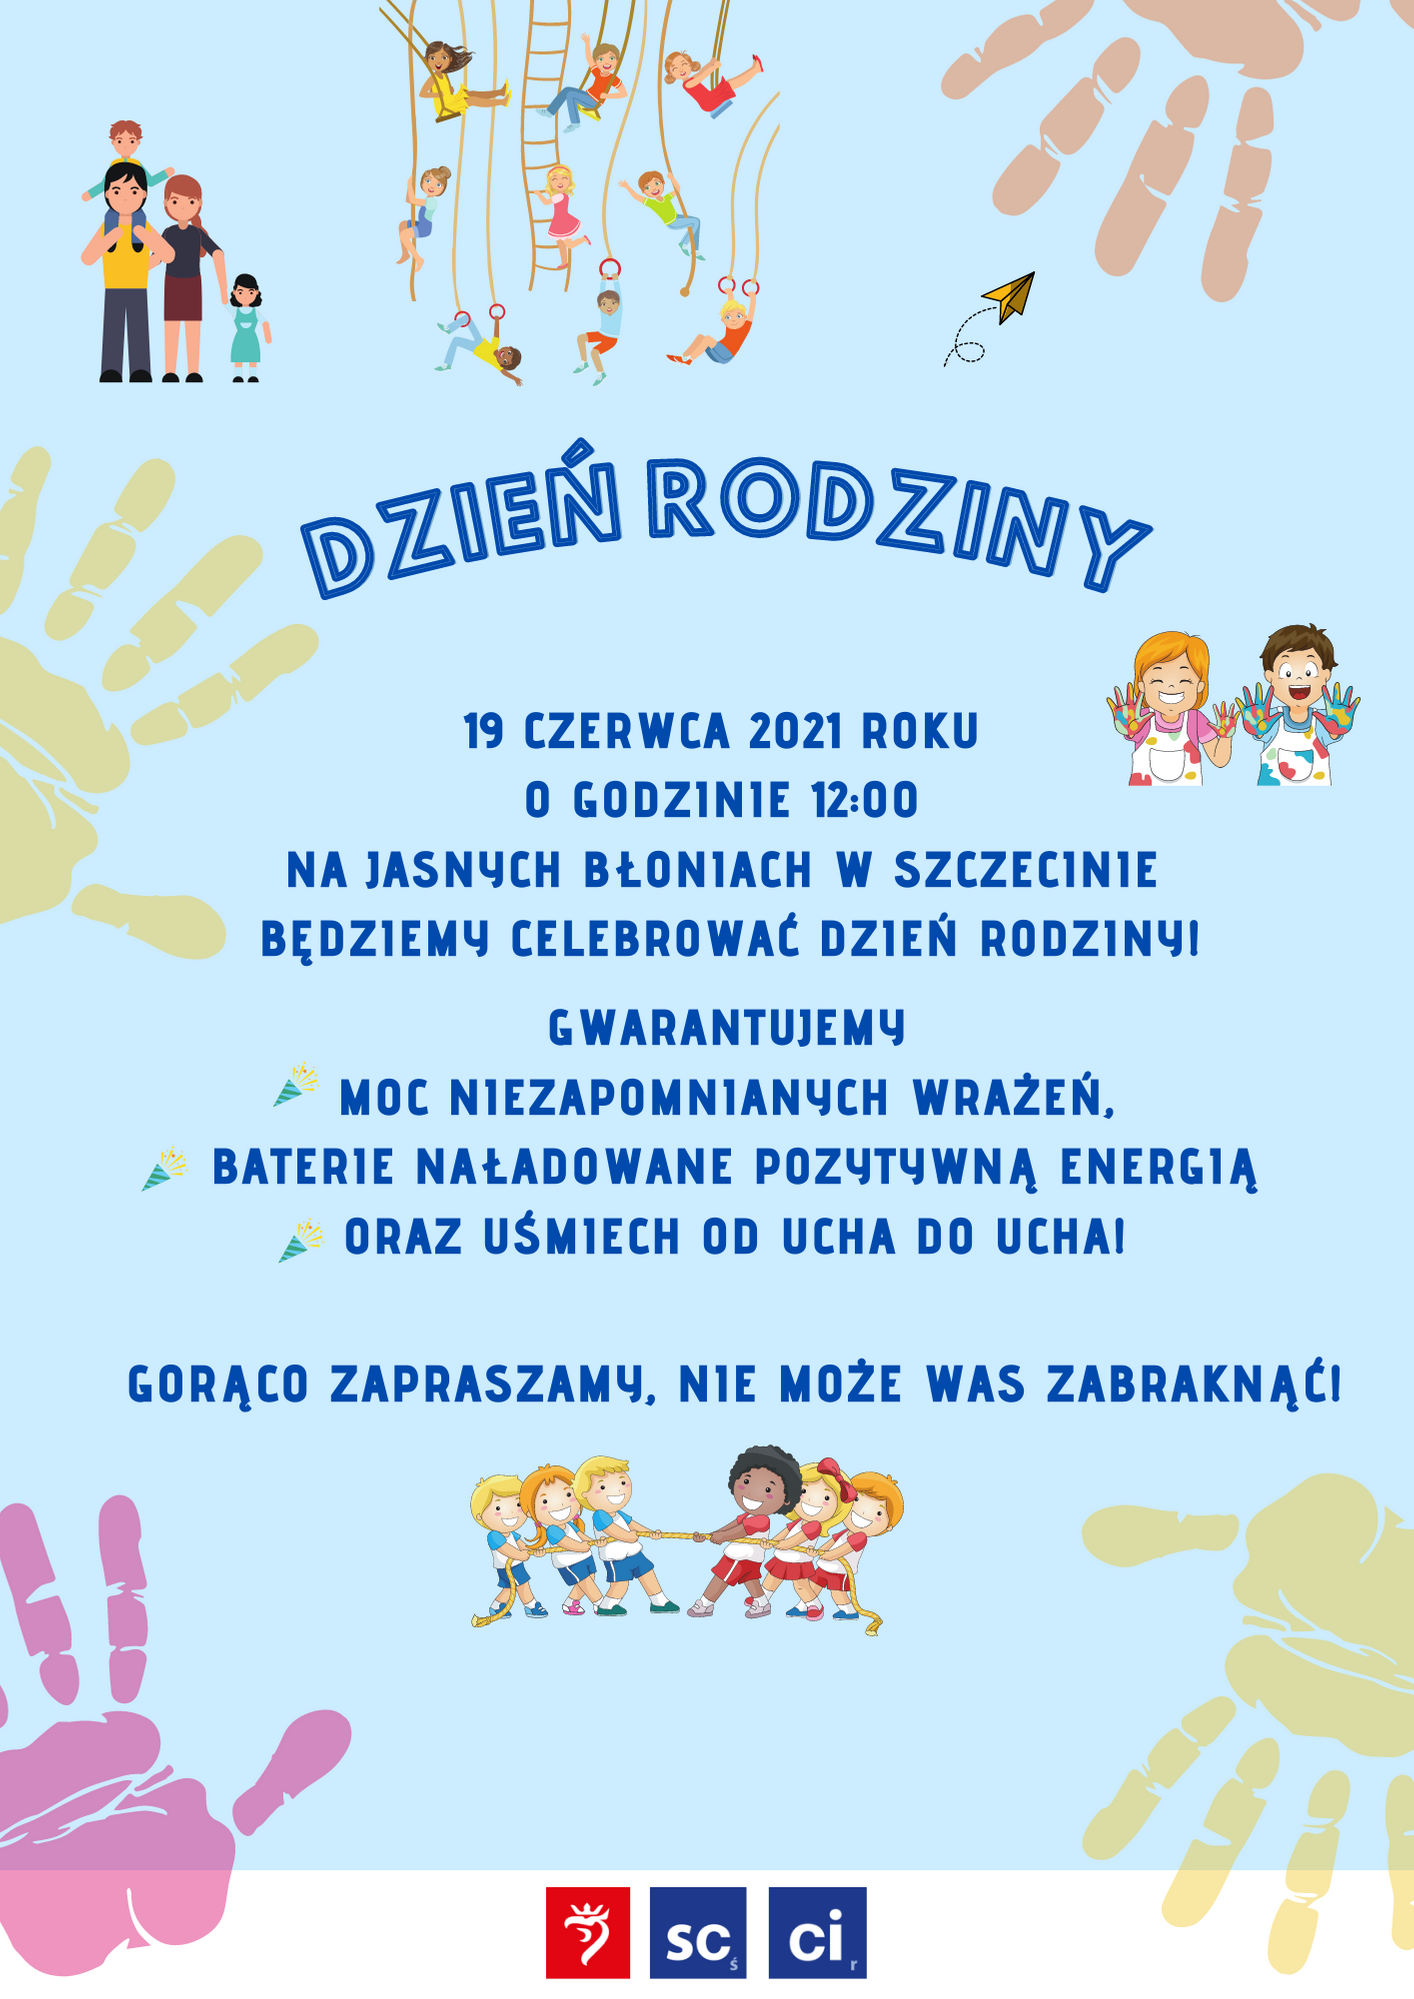 Plakat promujący Dzień Rodziny